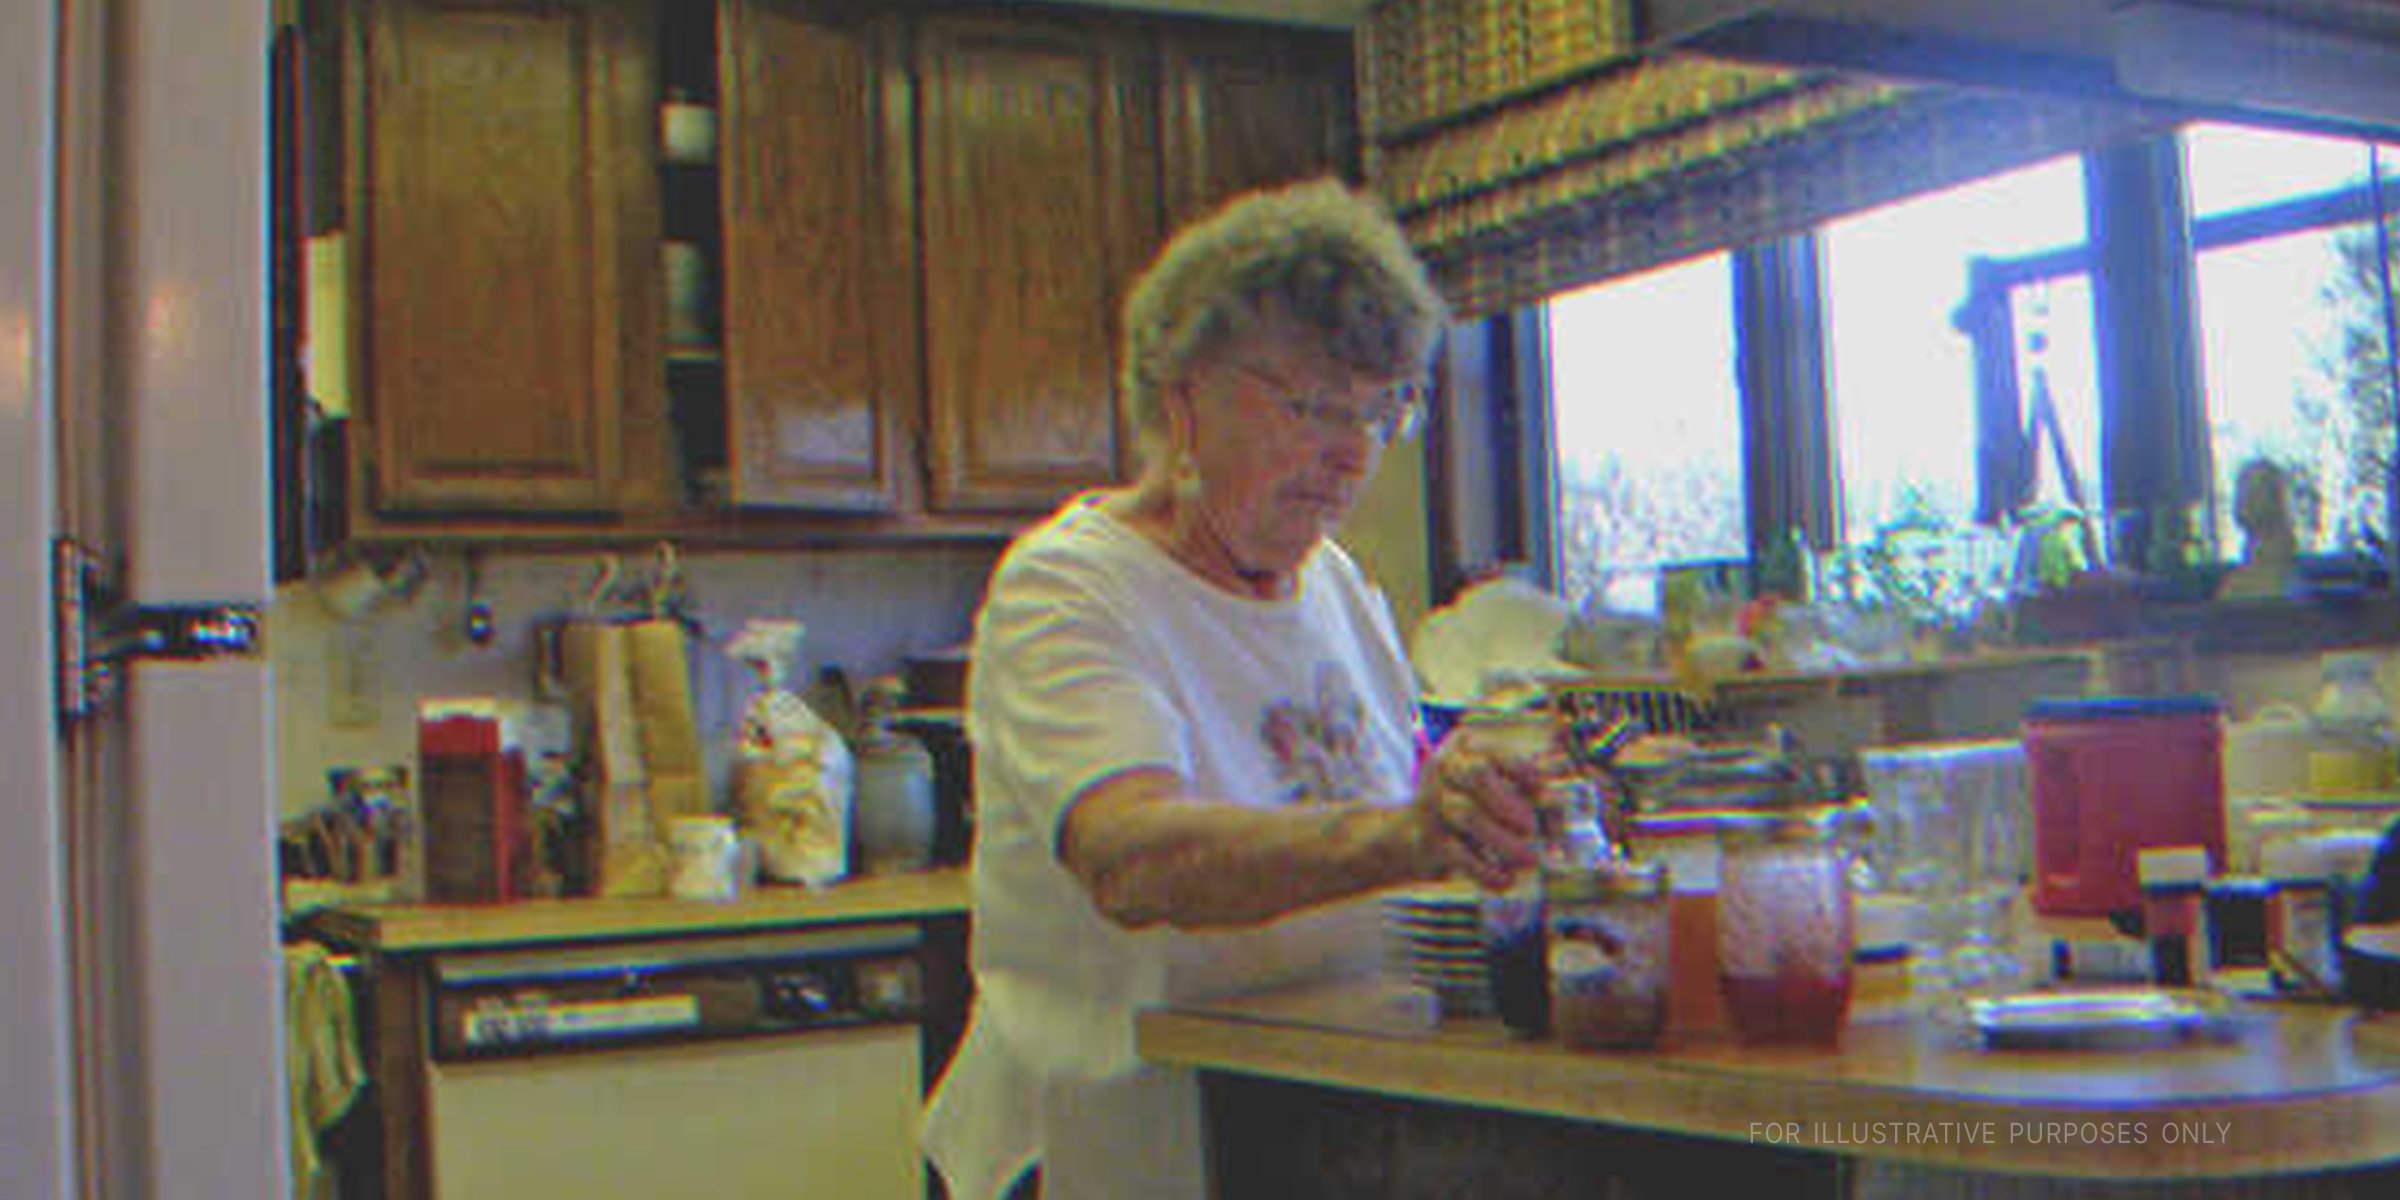 Elderly woman in kitchen |  Source: Flickr / bradleygee (CC BY 2.0)